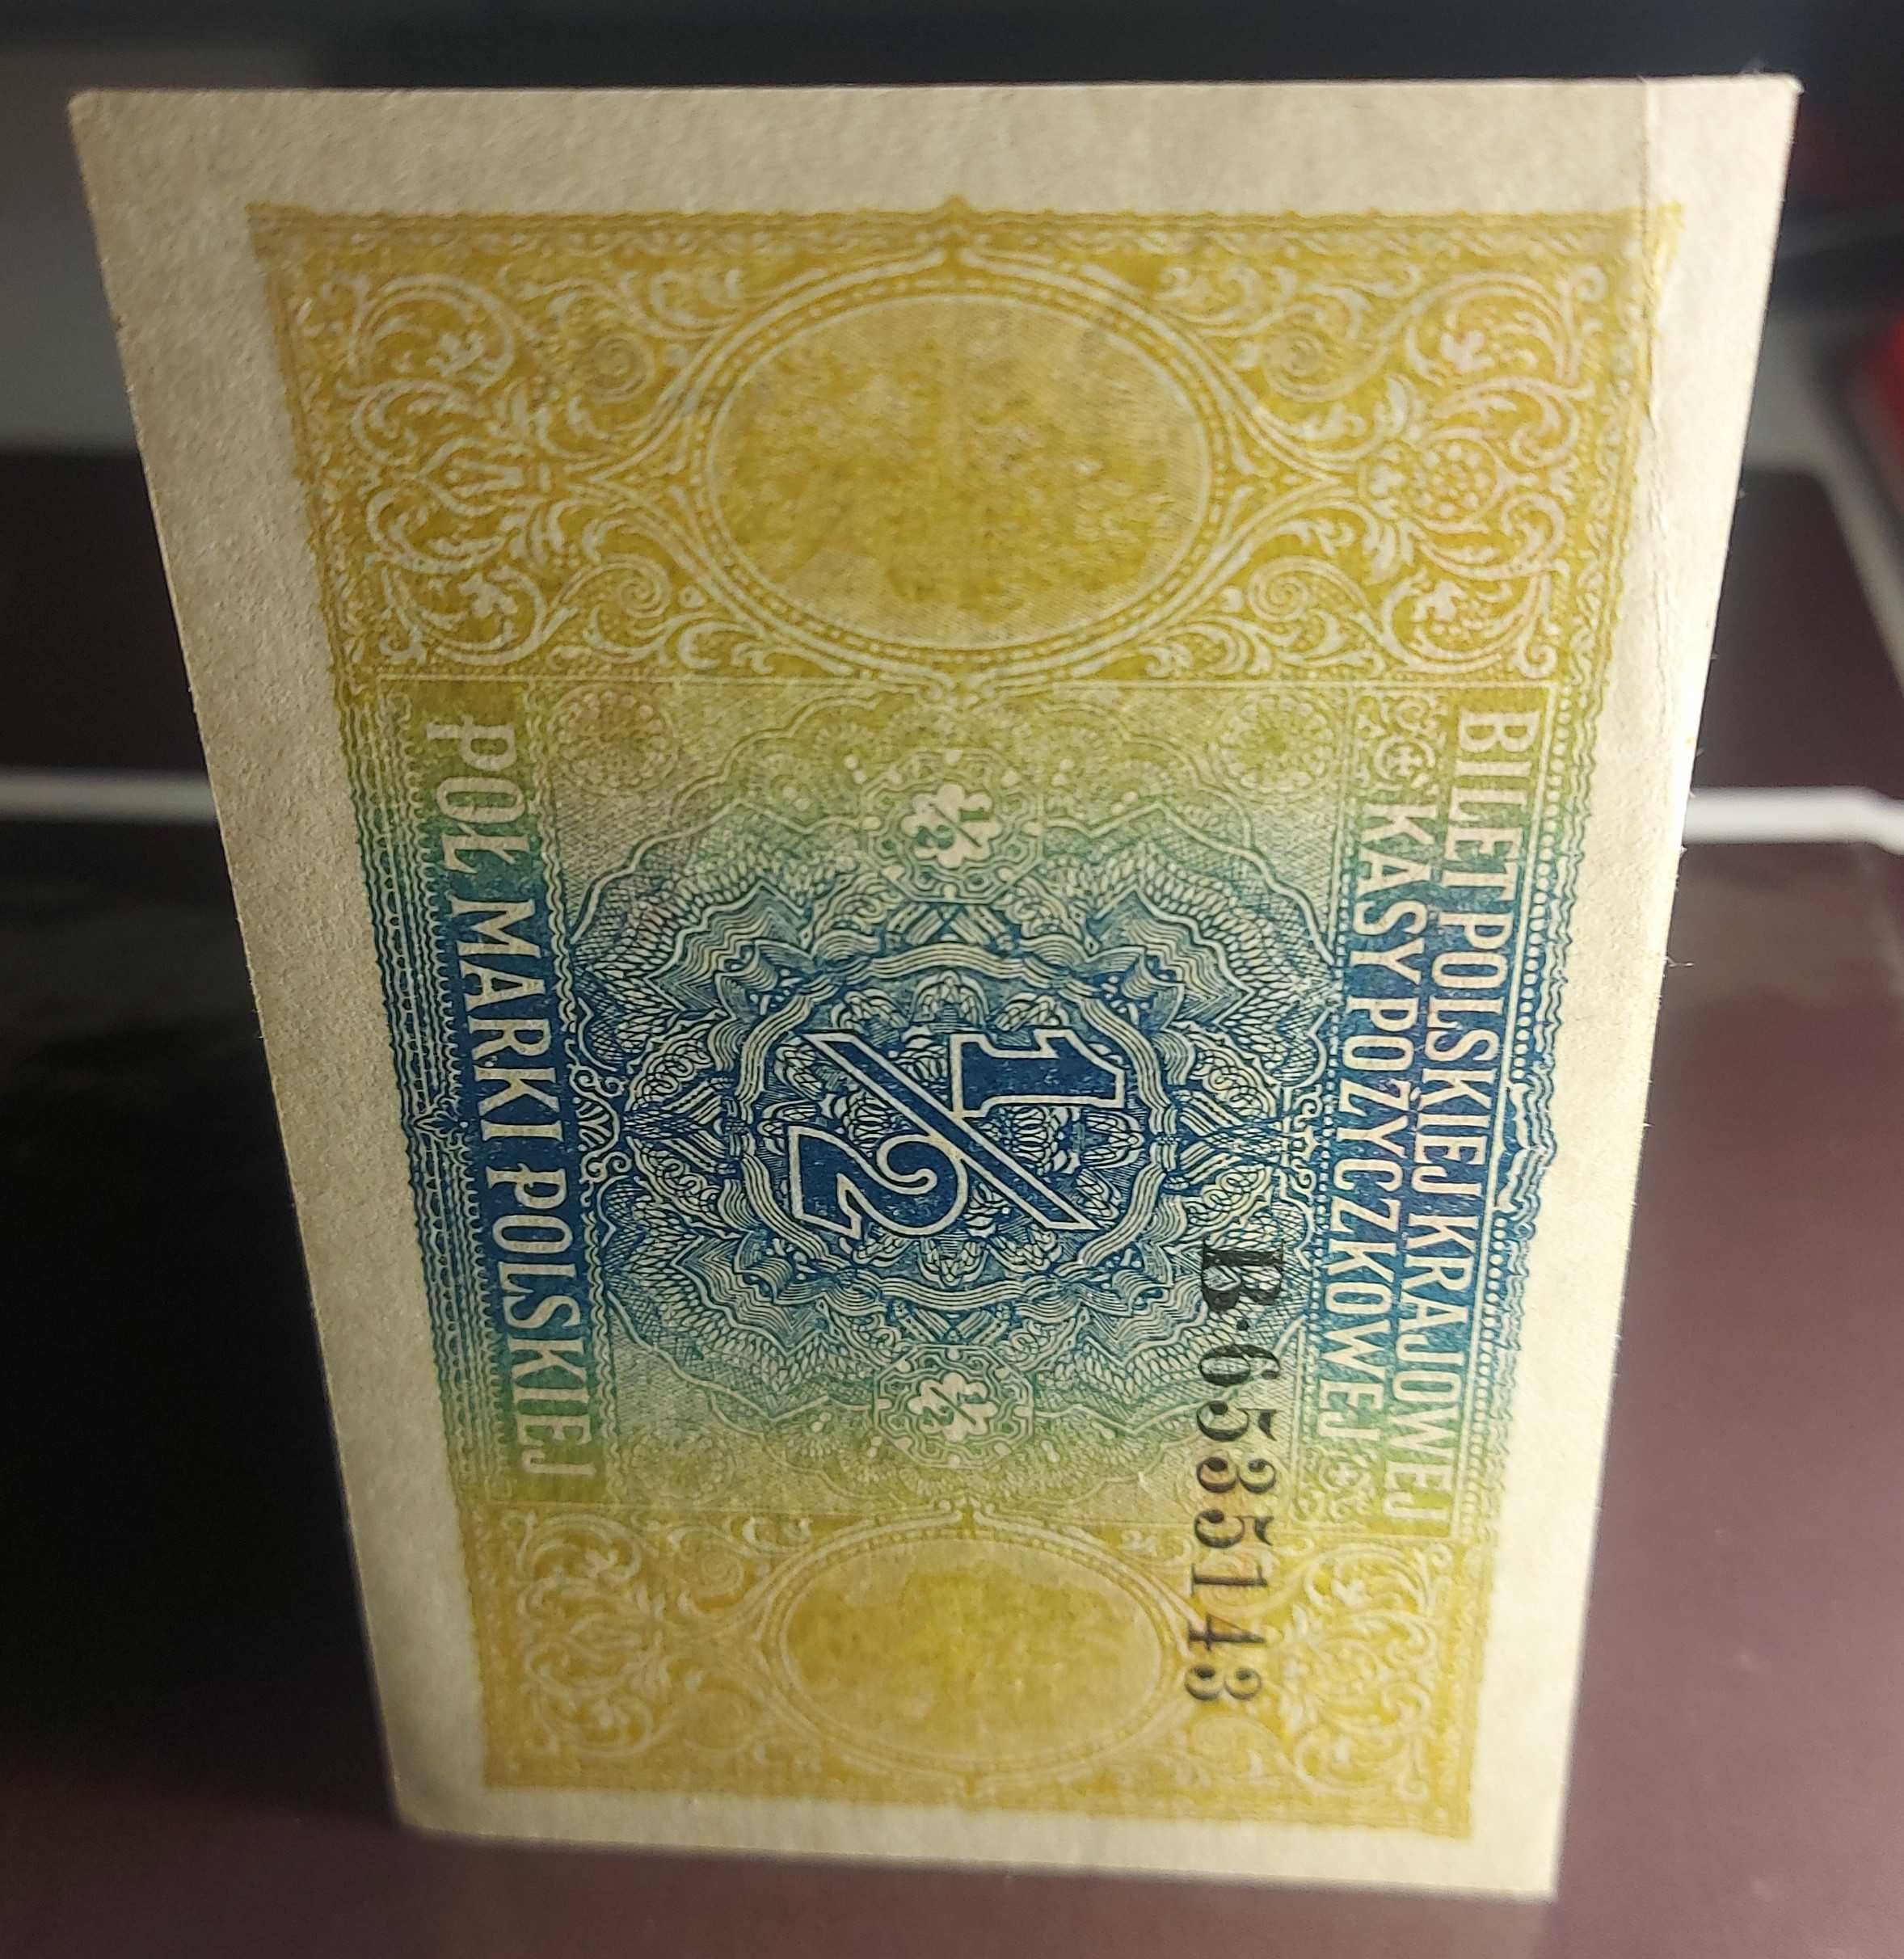 Banknot 1/2 marki polskiej z 1916 roku.Generał.